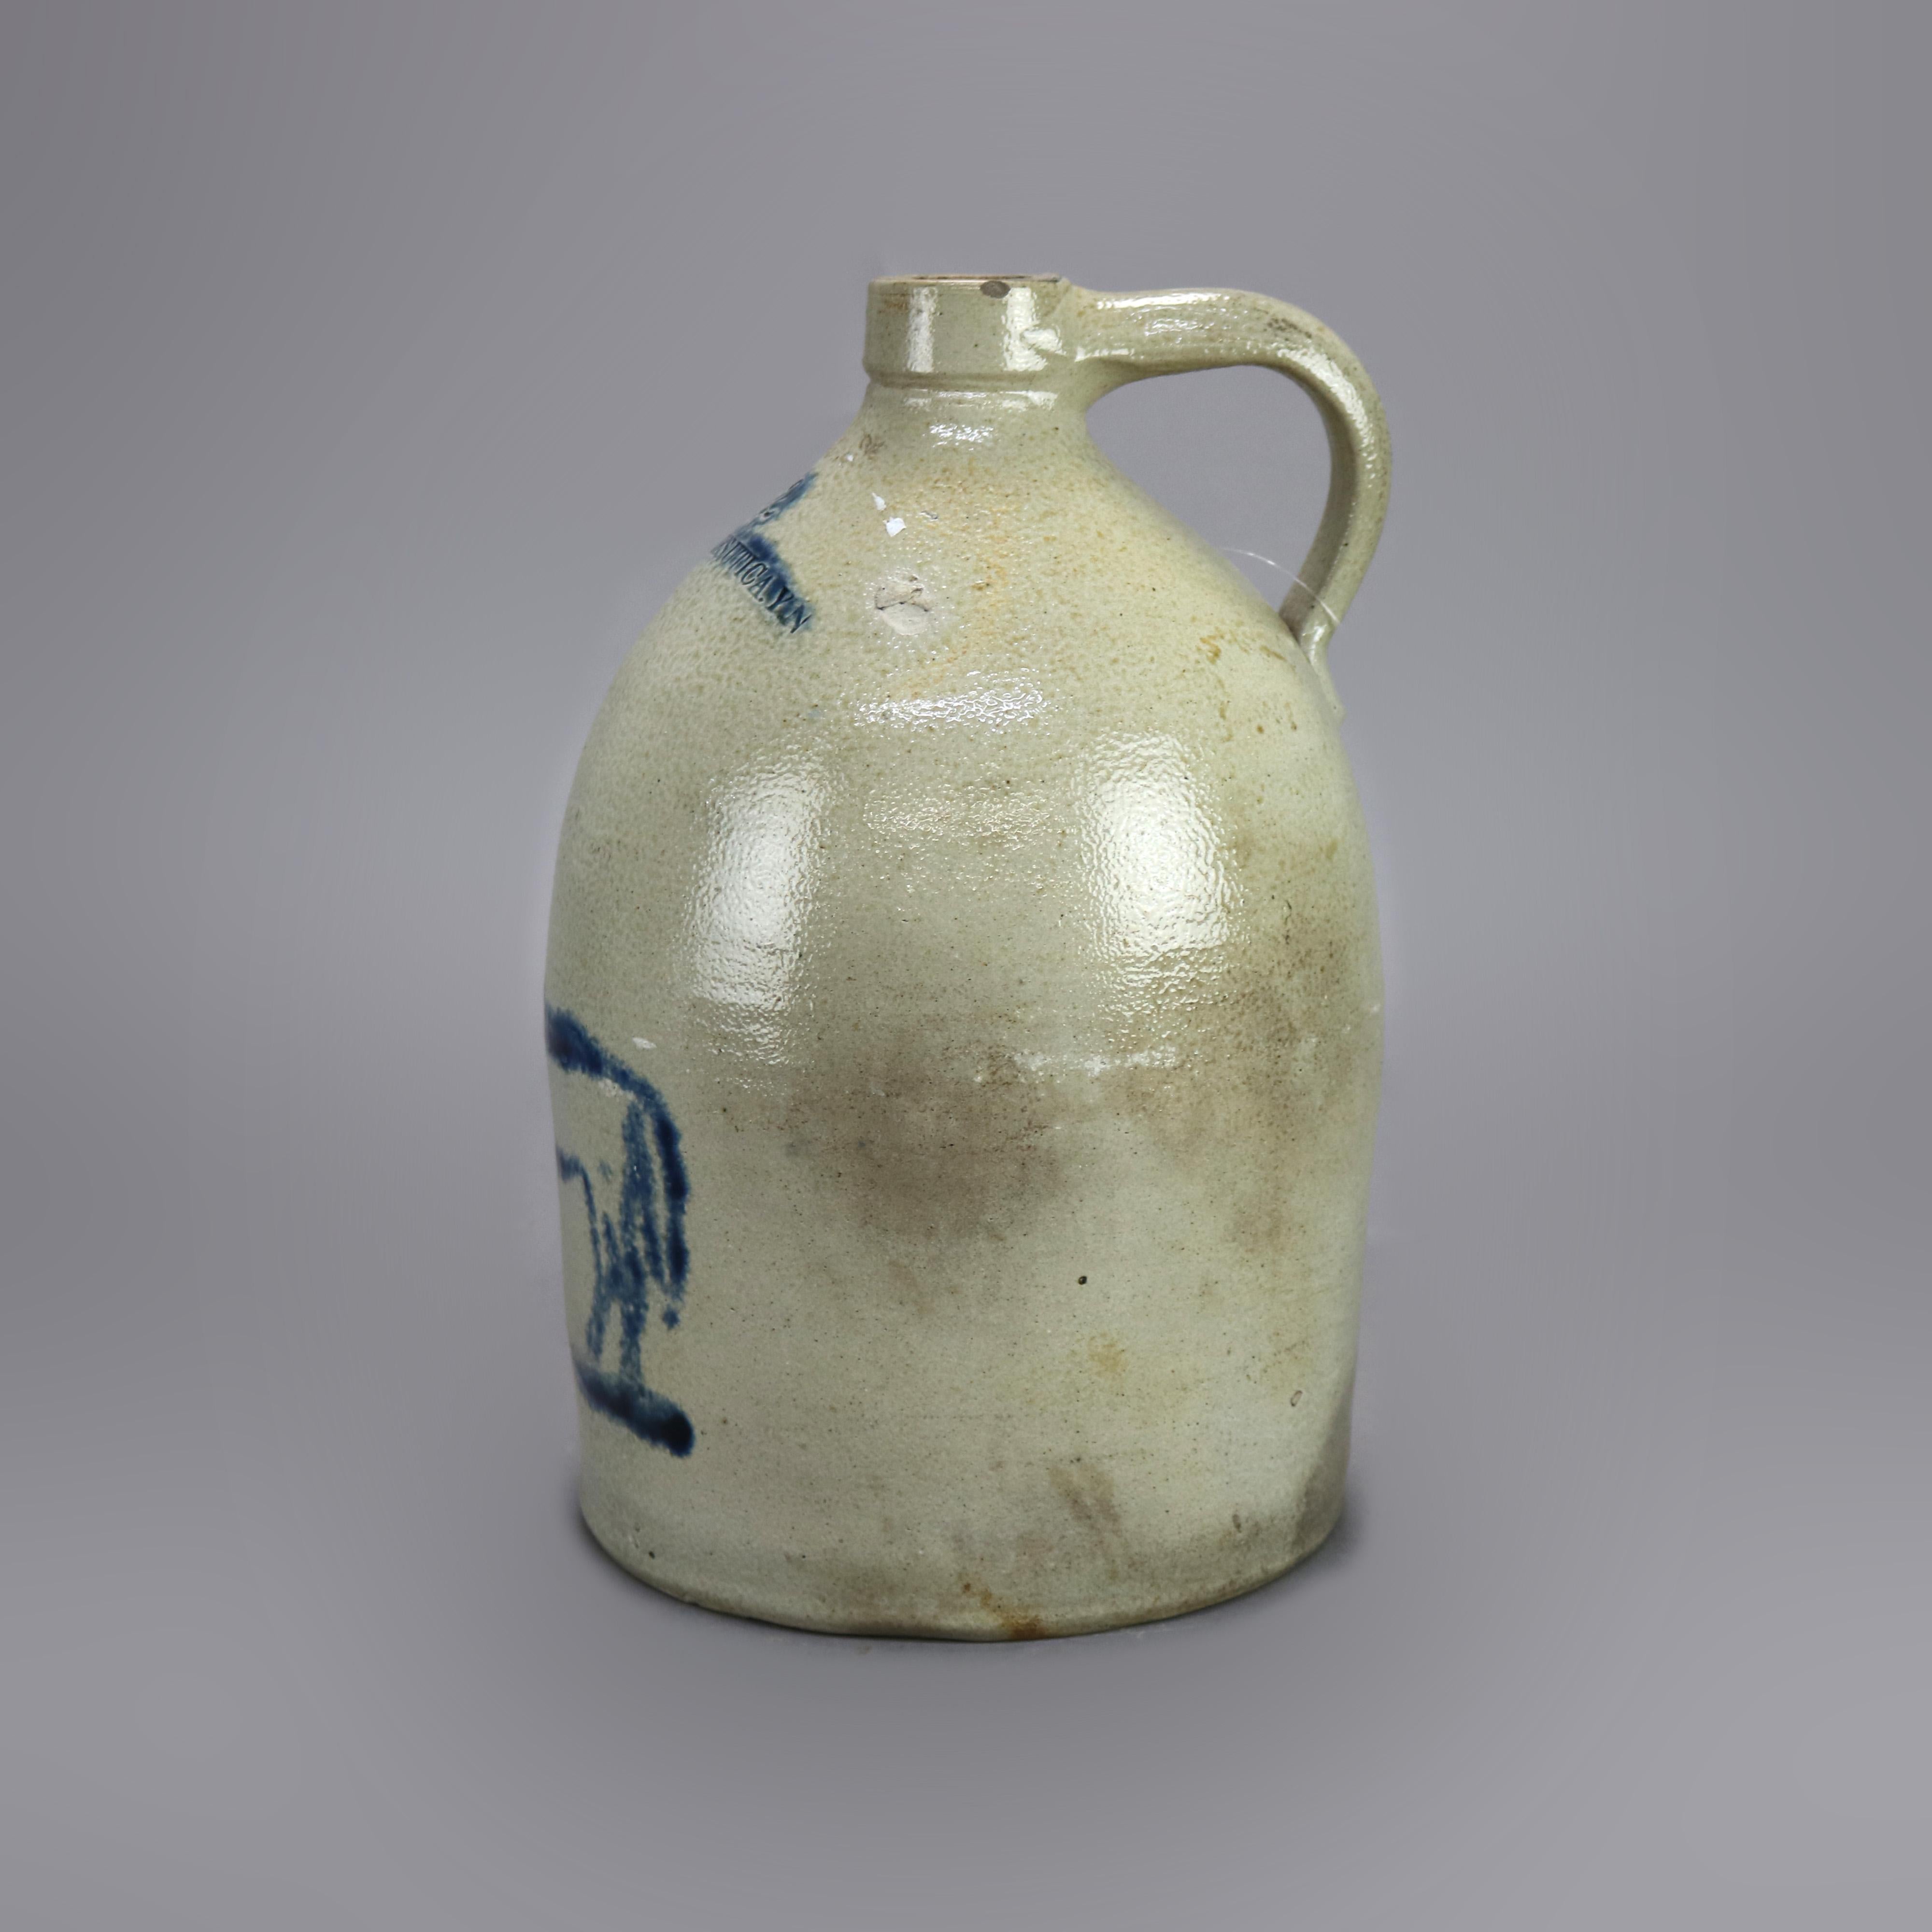 Rare Antique Whites Utica Salt Glaze Stoneware Jug, Blue Decorated Horse, 19th C 3